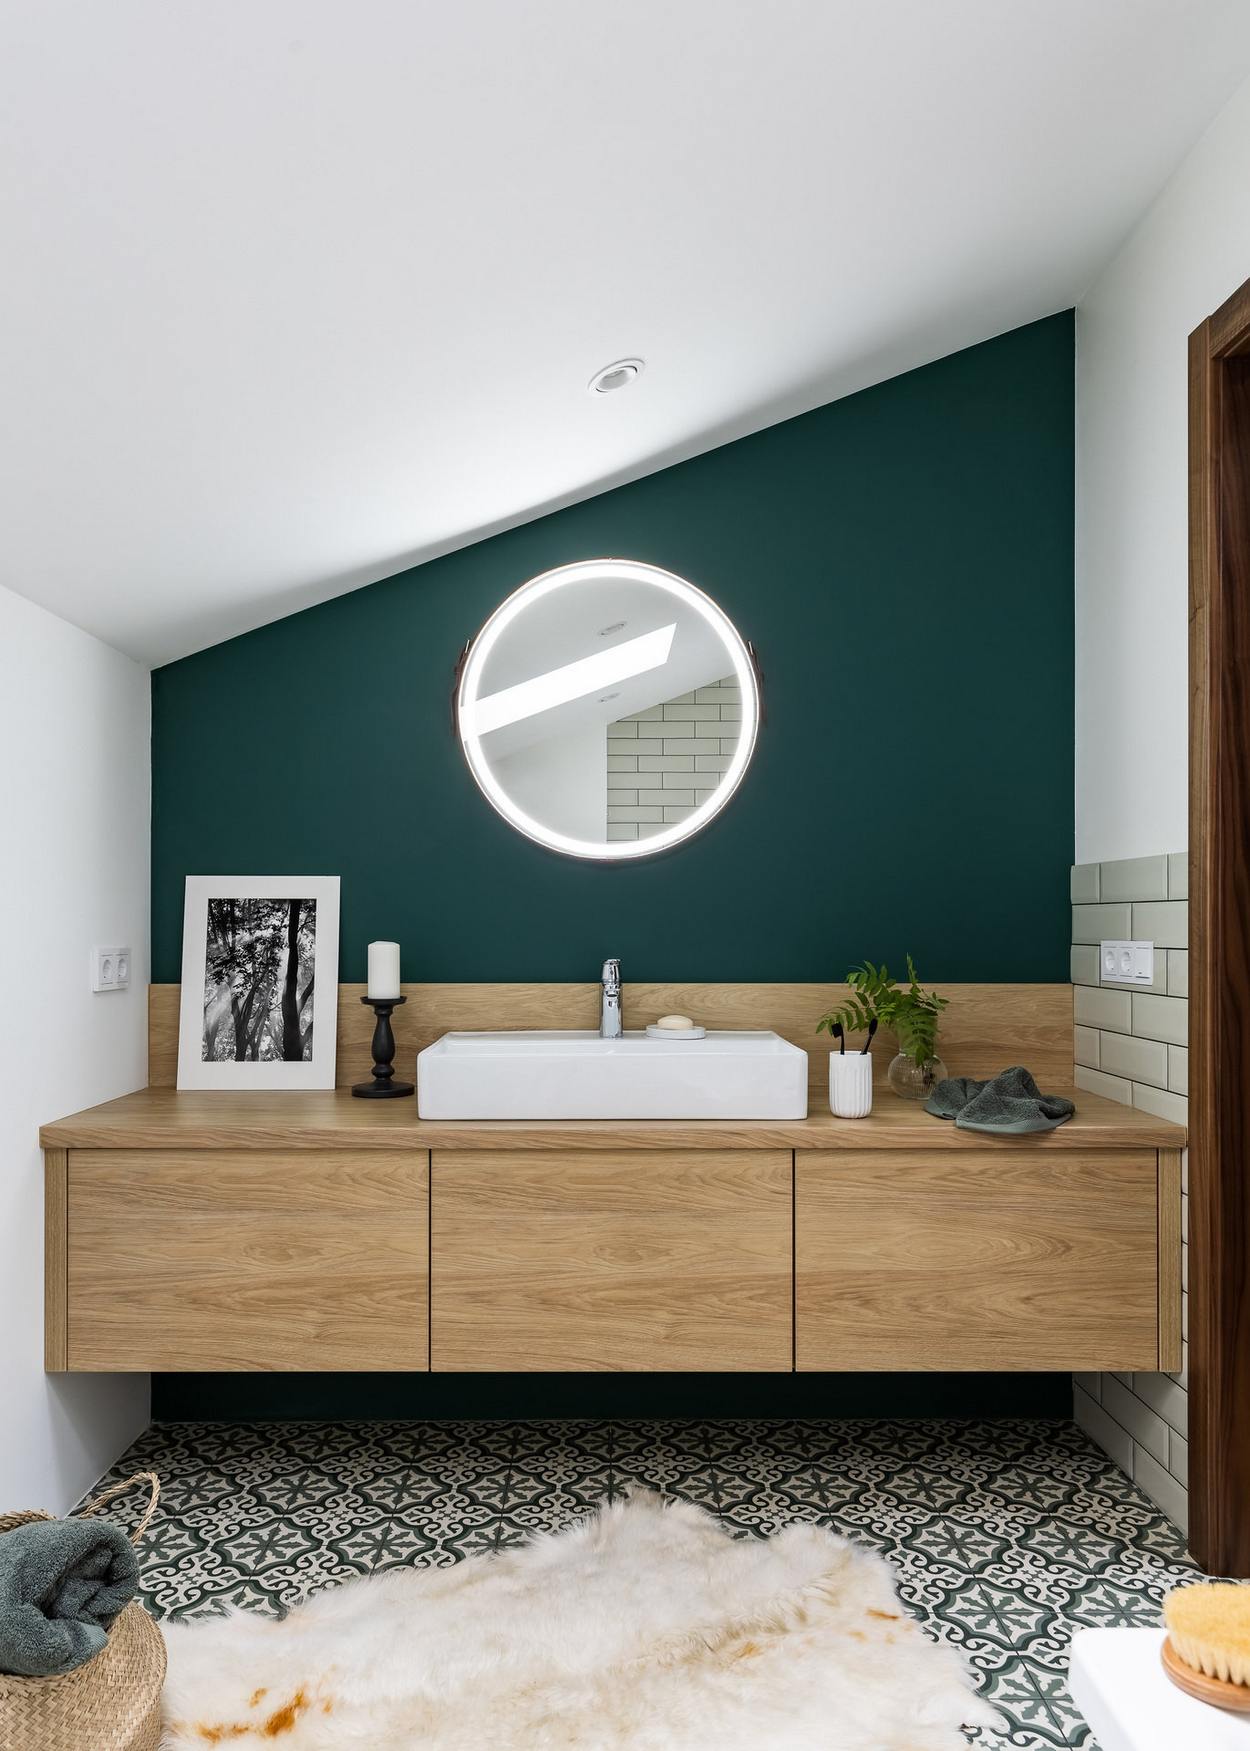 Căn phòng này có thiết kế phòng tắm riêng, tiếp tục sử dụng tone màu xanh ngọc lục bảo thời trang này để tạo sự kết nối về mặt thị giác. Sàn nhà lát gạch bông hoa văn cổ điển cũng góp phần làm tăng tính thẩm mỹ cho phòng tắm.